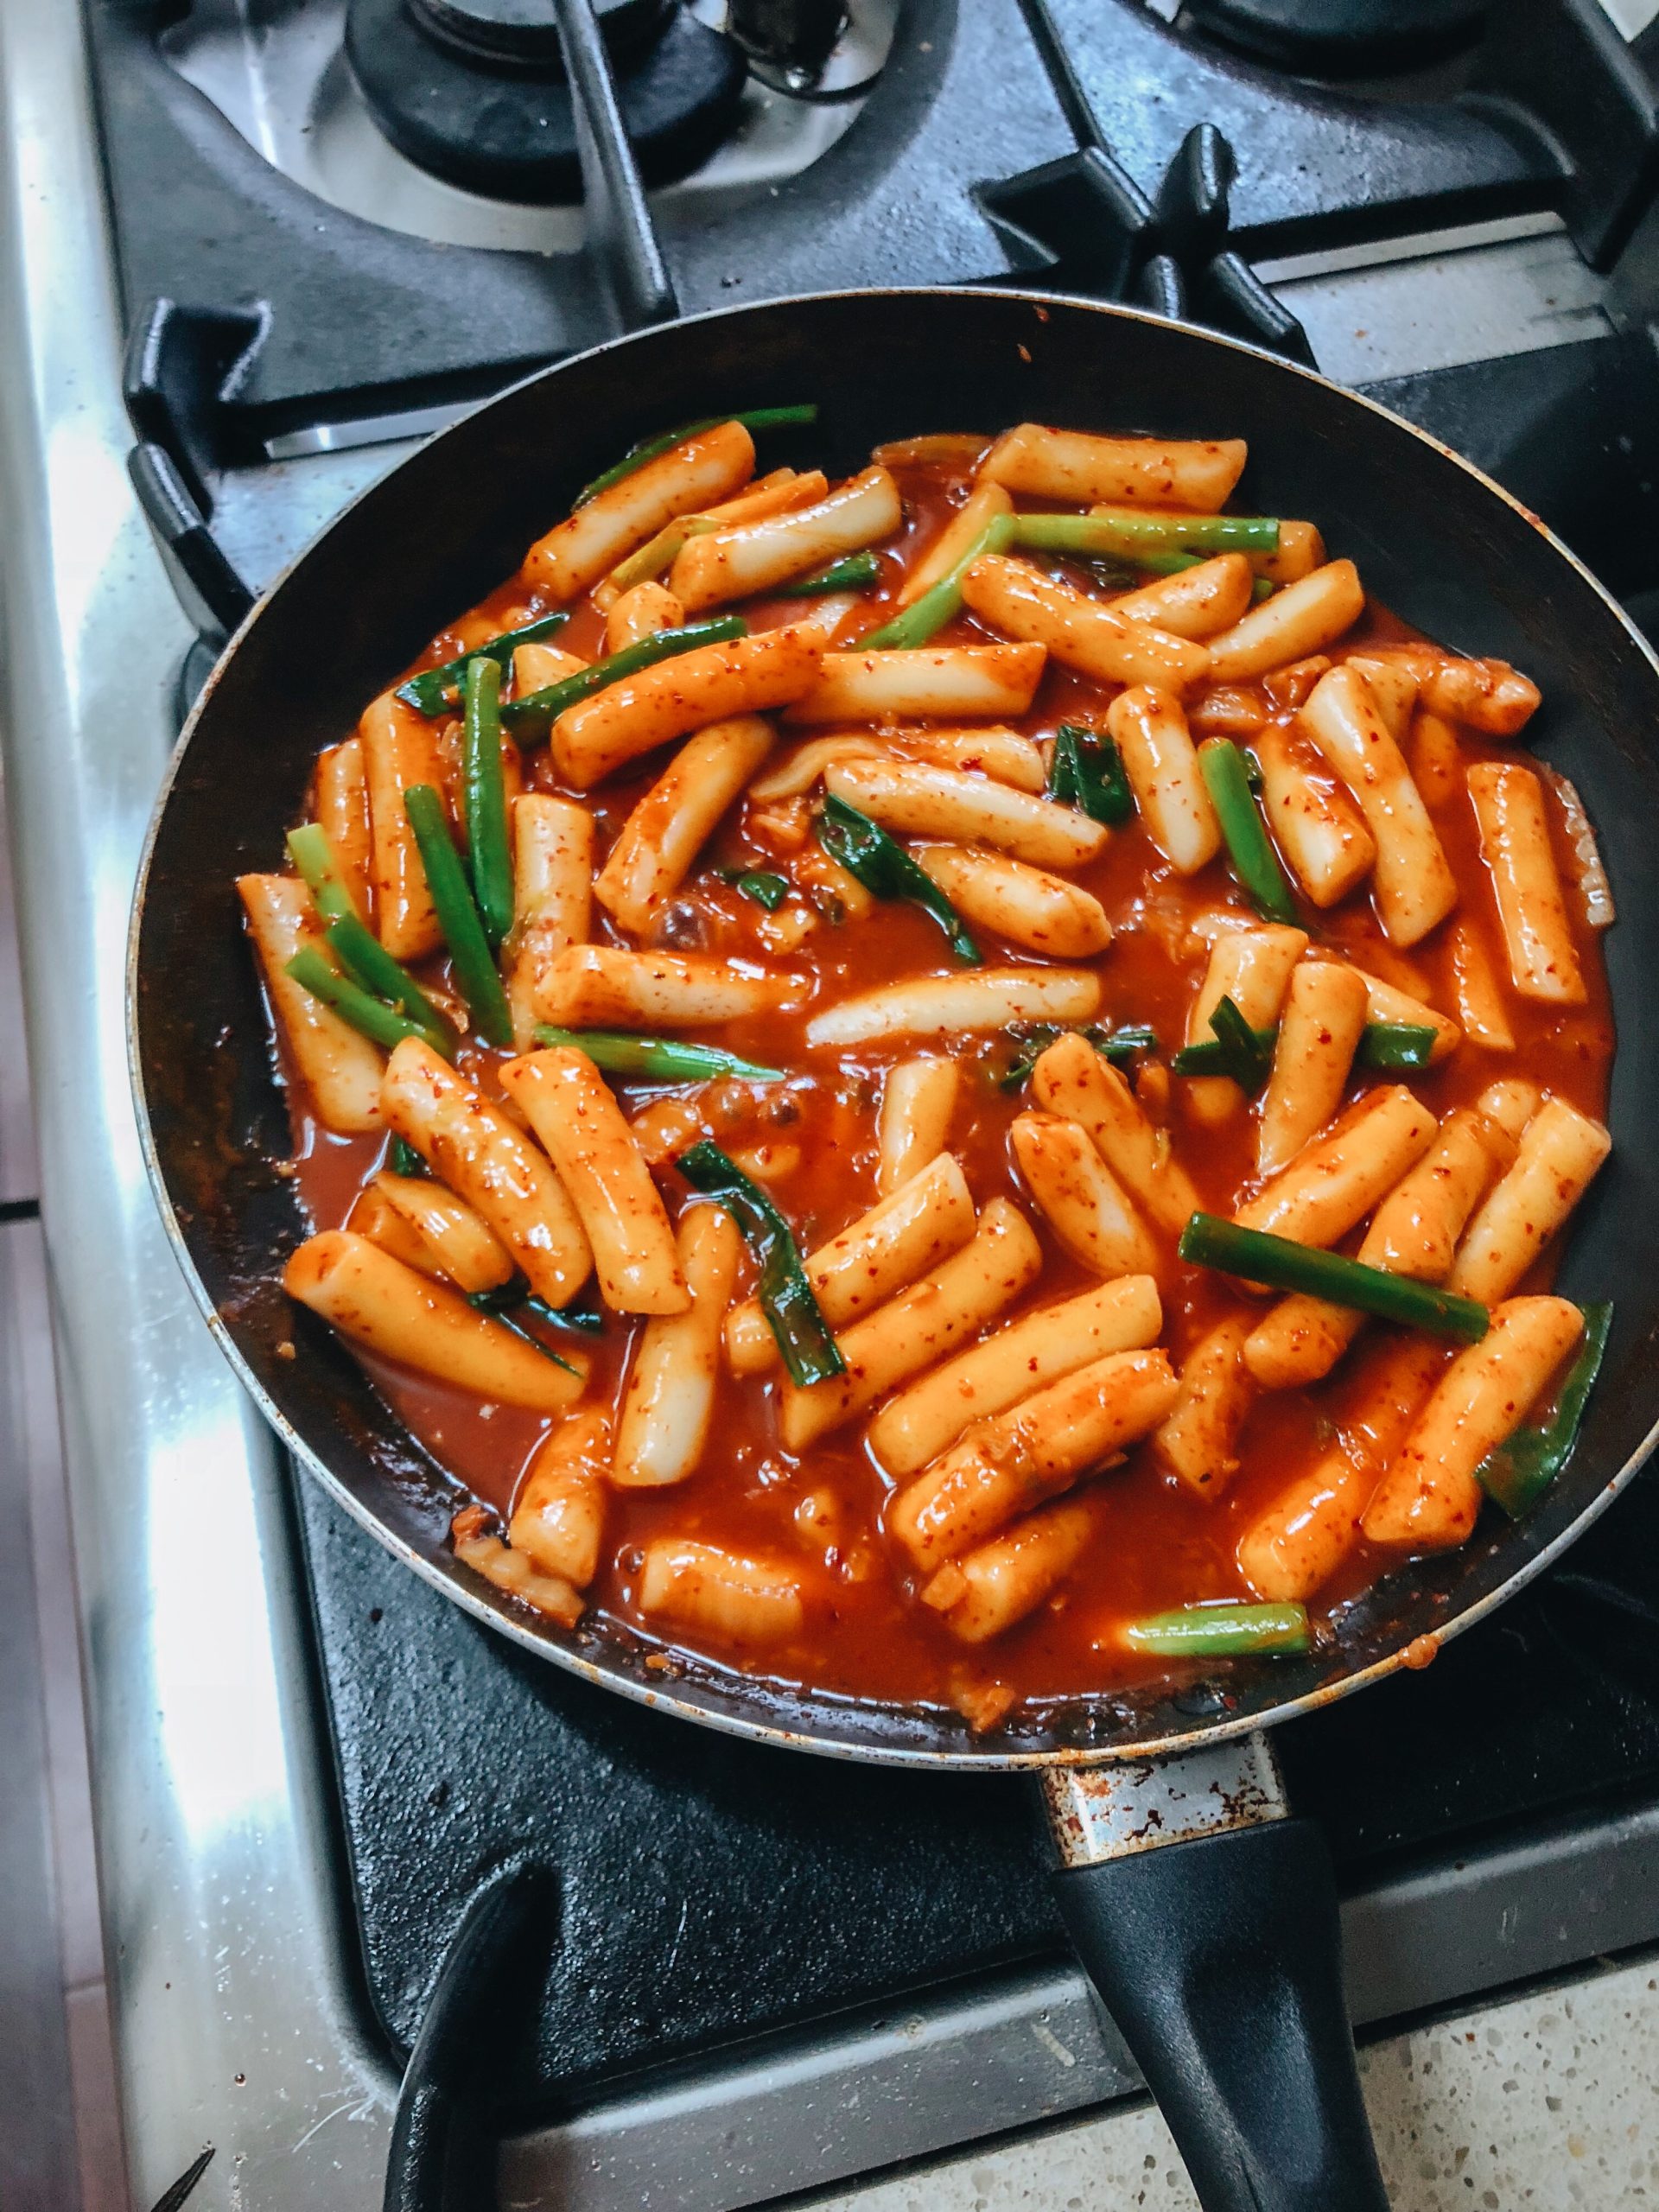 Korean Spicy Rice Cakes (Tteokbokki)